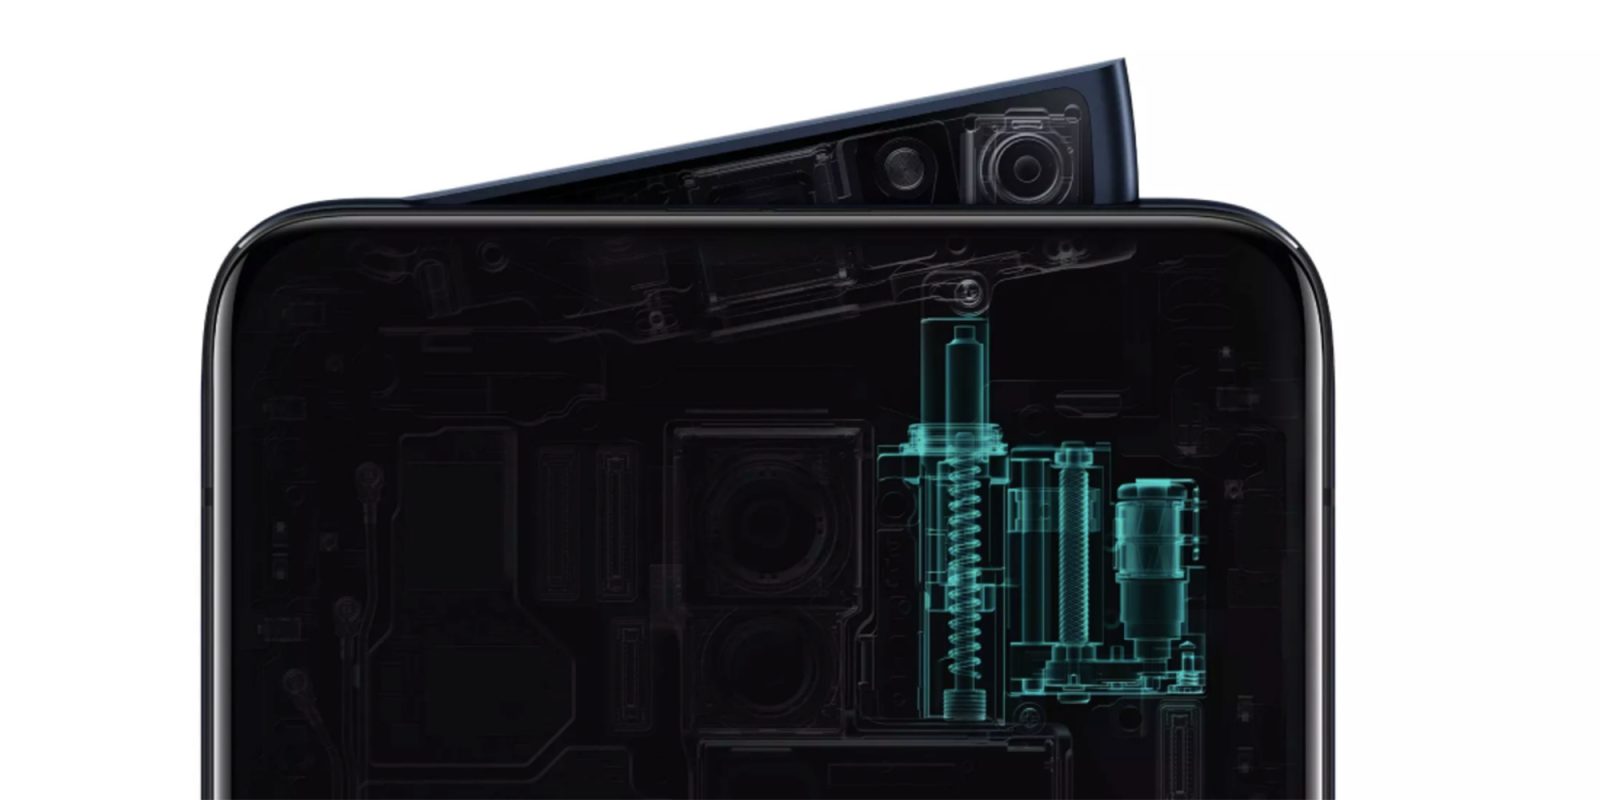 Oppo Reno 10X Zoom ทำคะแนนทดสอบผ่าน AnTuTu แรงแซงหน้า Samsung Galaxy S10+